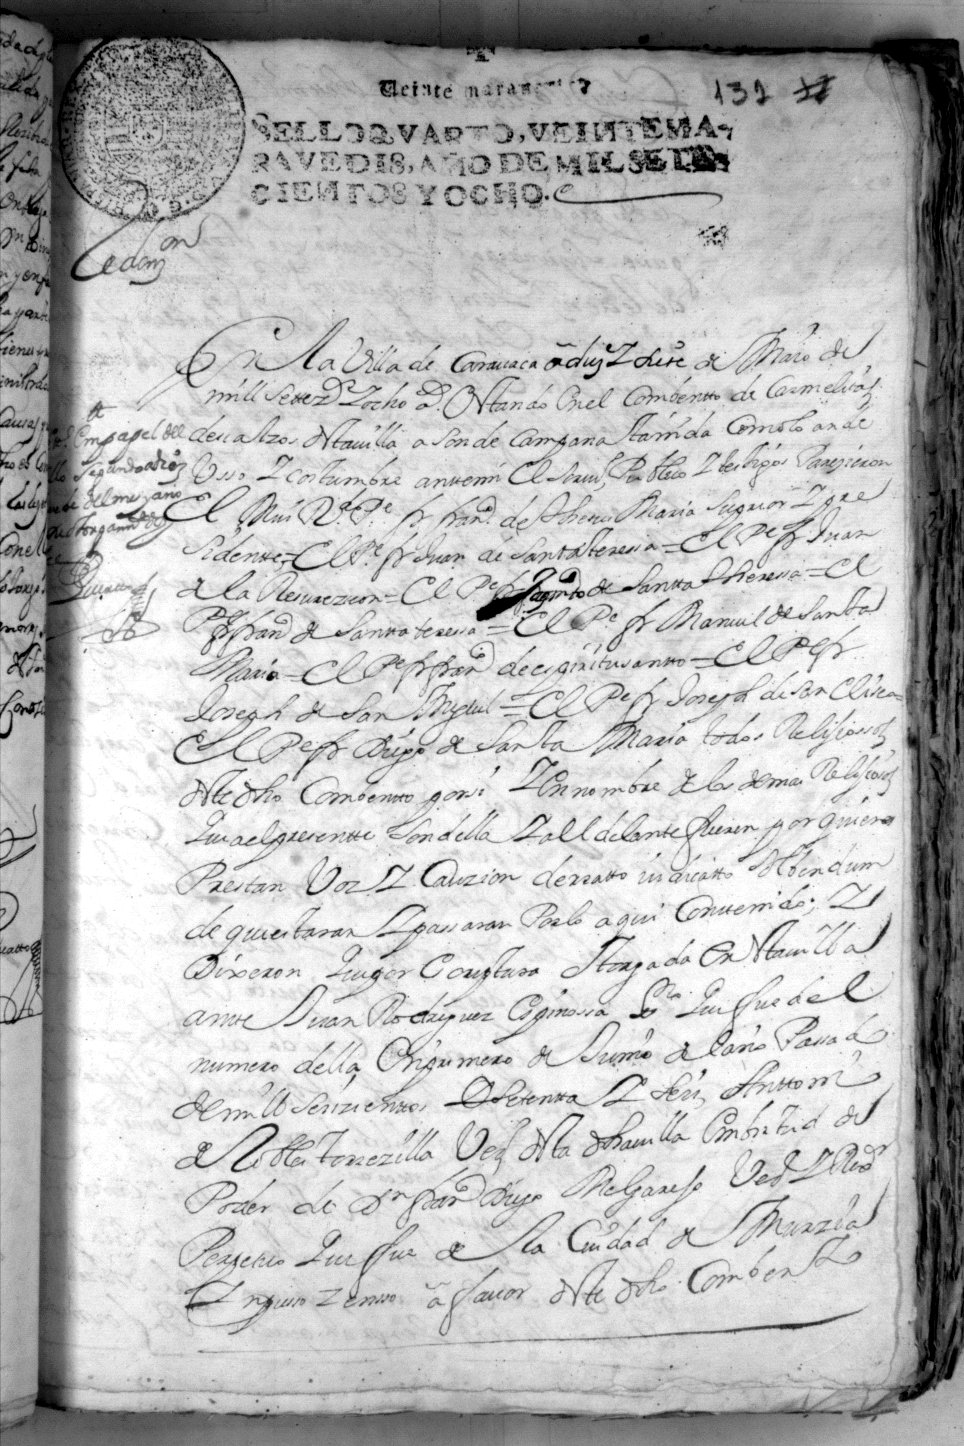 Registros de Juan Francisco Torrecilla del Puerto, Caravaca de la Cruz. Años 1707-1712.